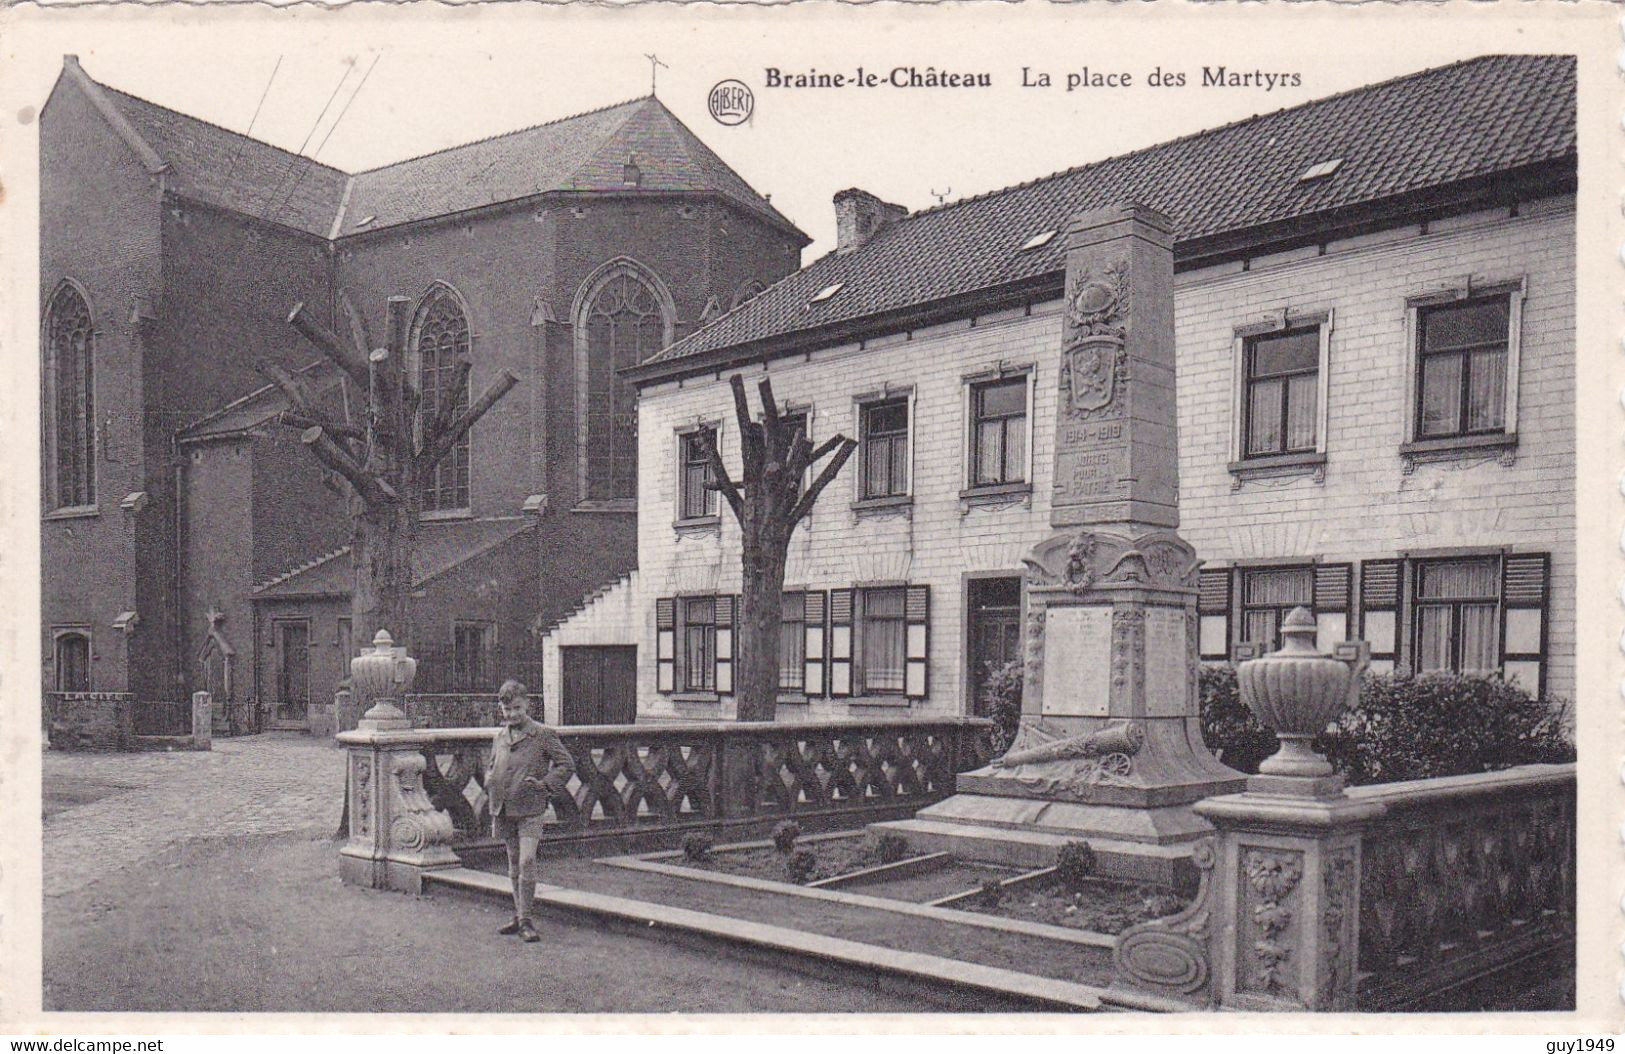 LA PLACE DES MARTYES - Braine-le-Chateau